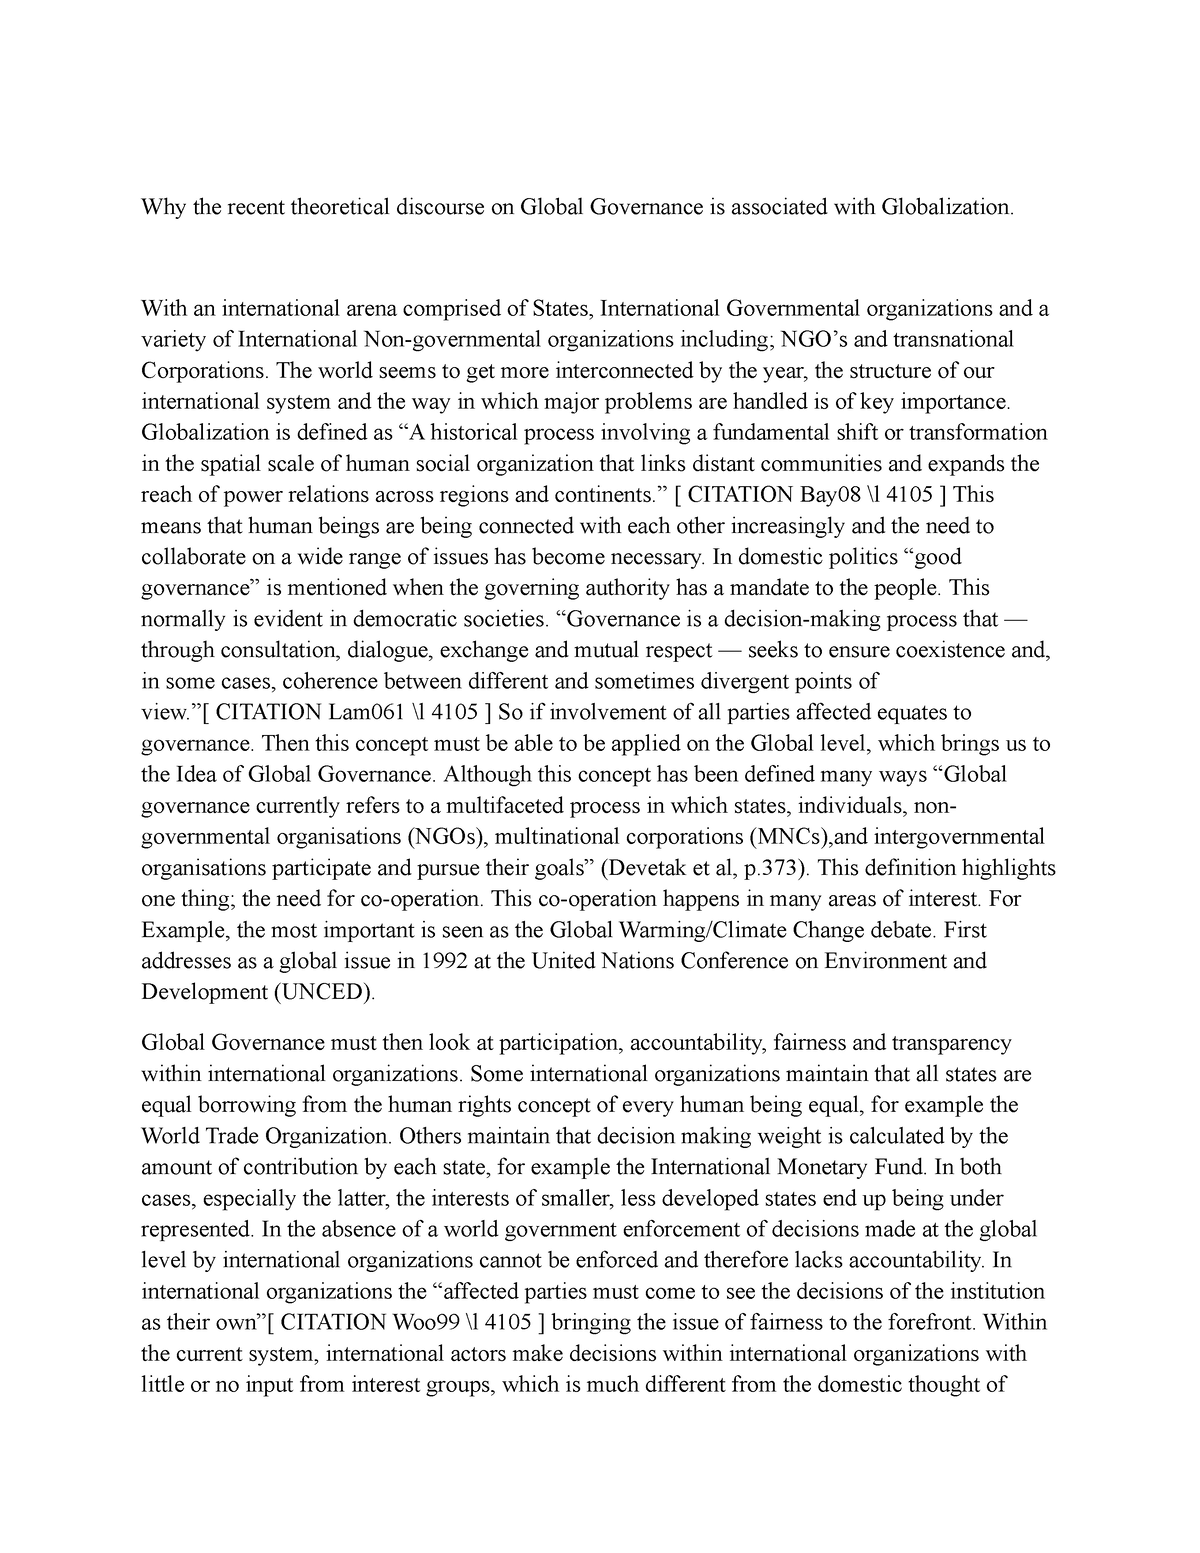 thesis on global governance